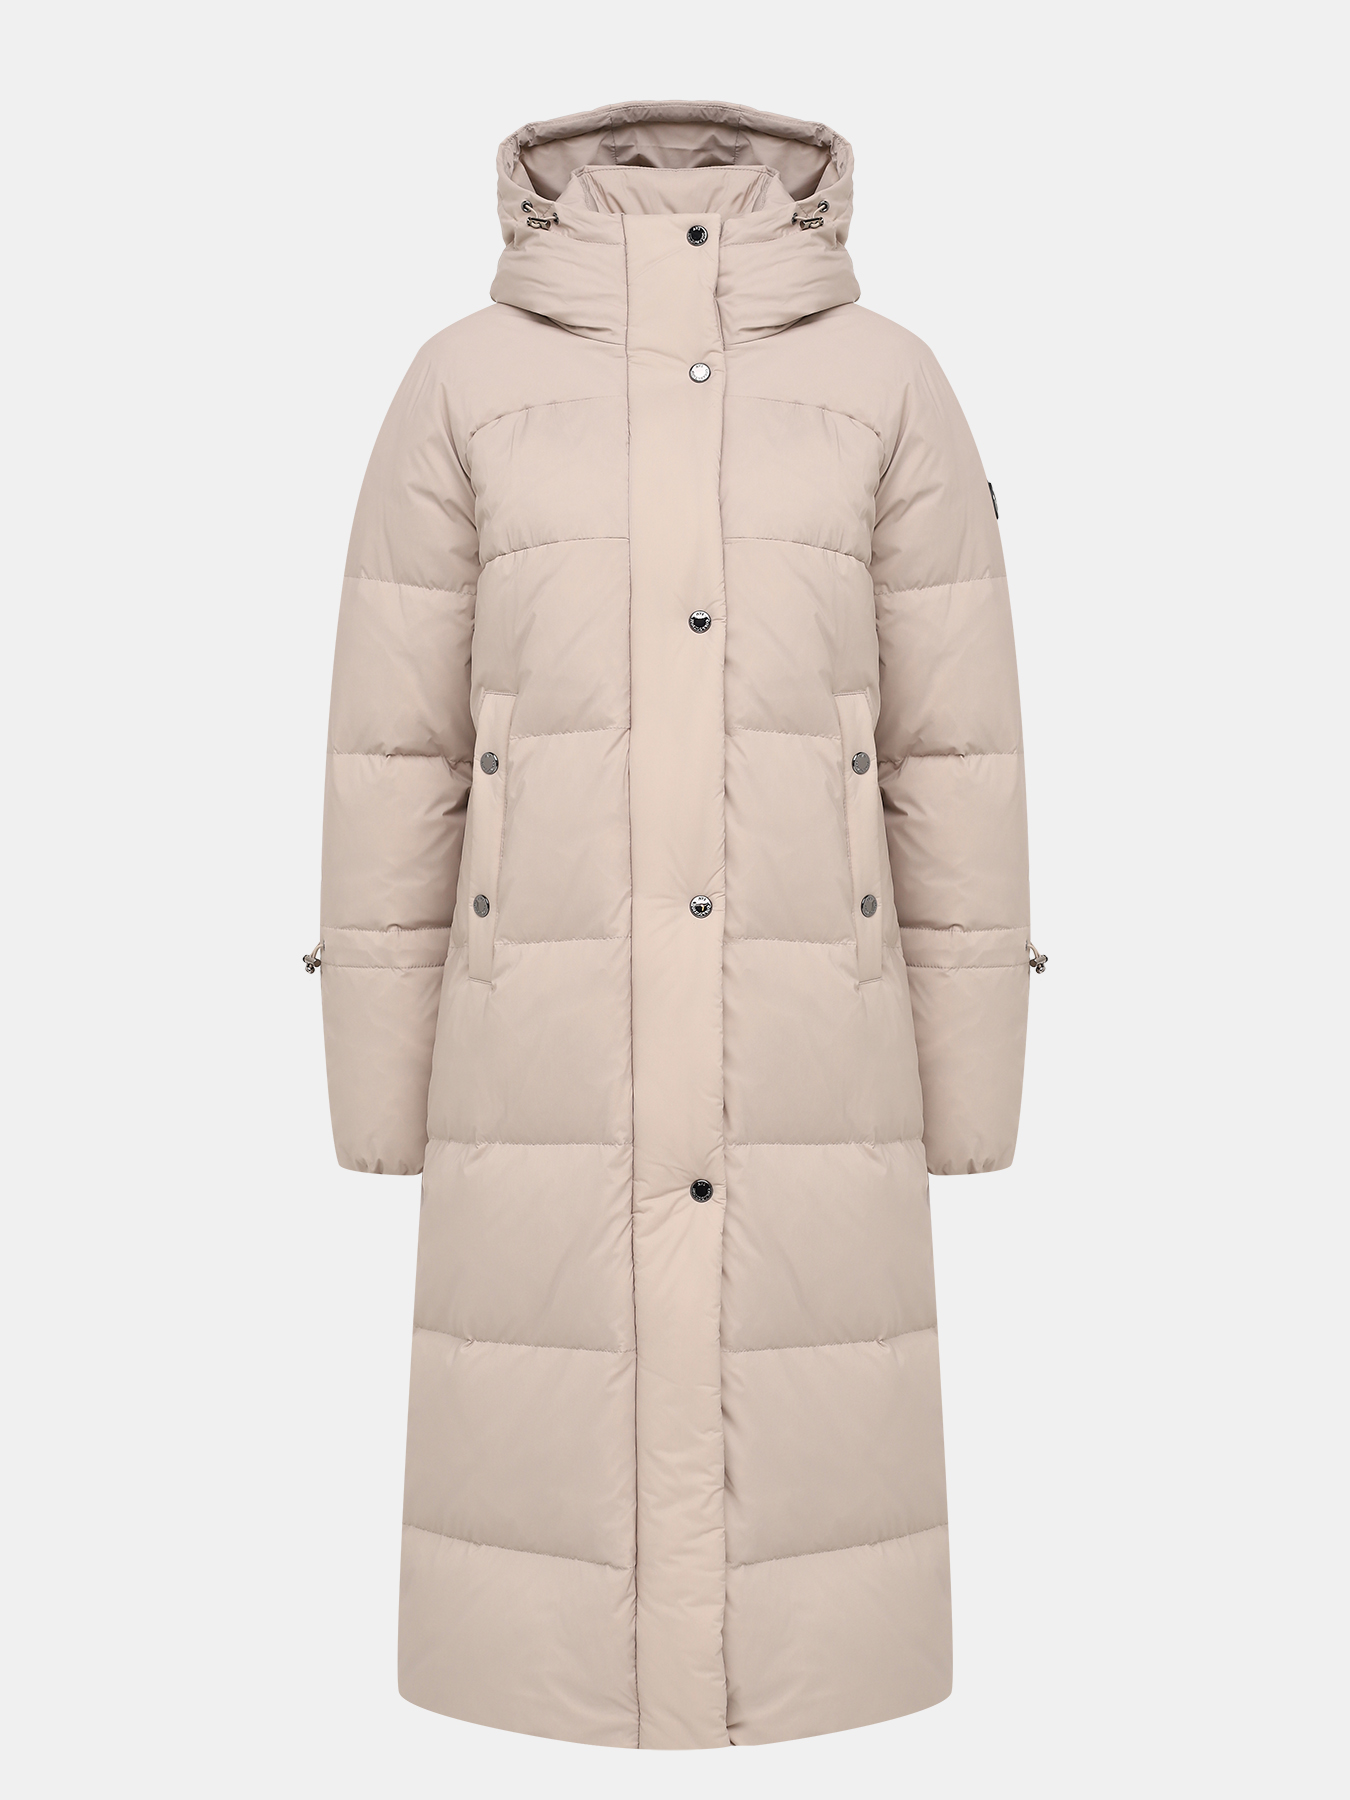 Пальто зимнее AVI 433604-026, цвет бежевый, размер 50